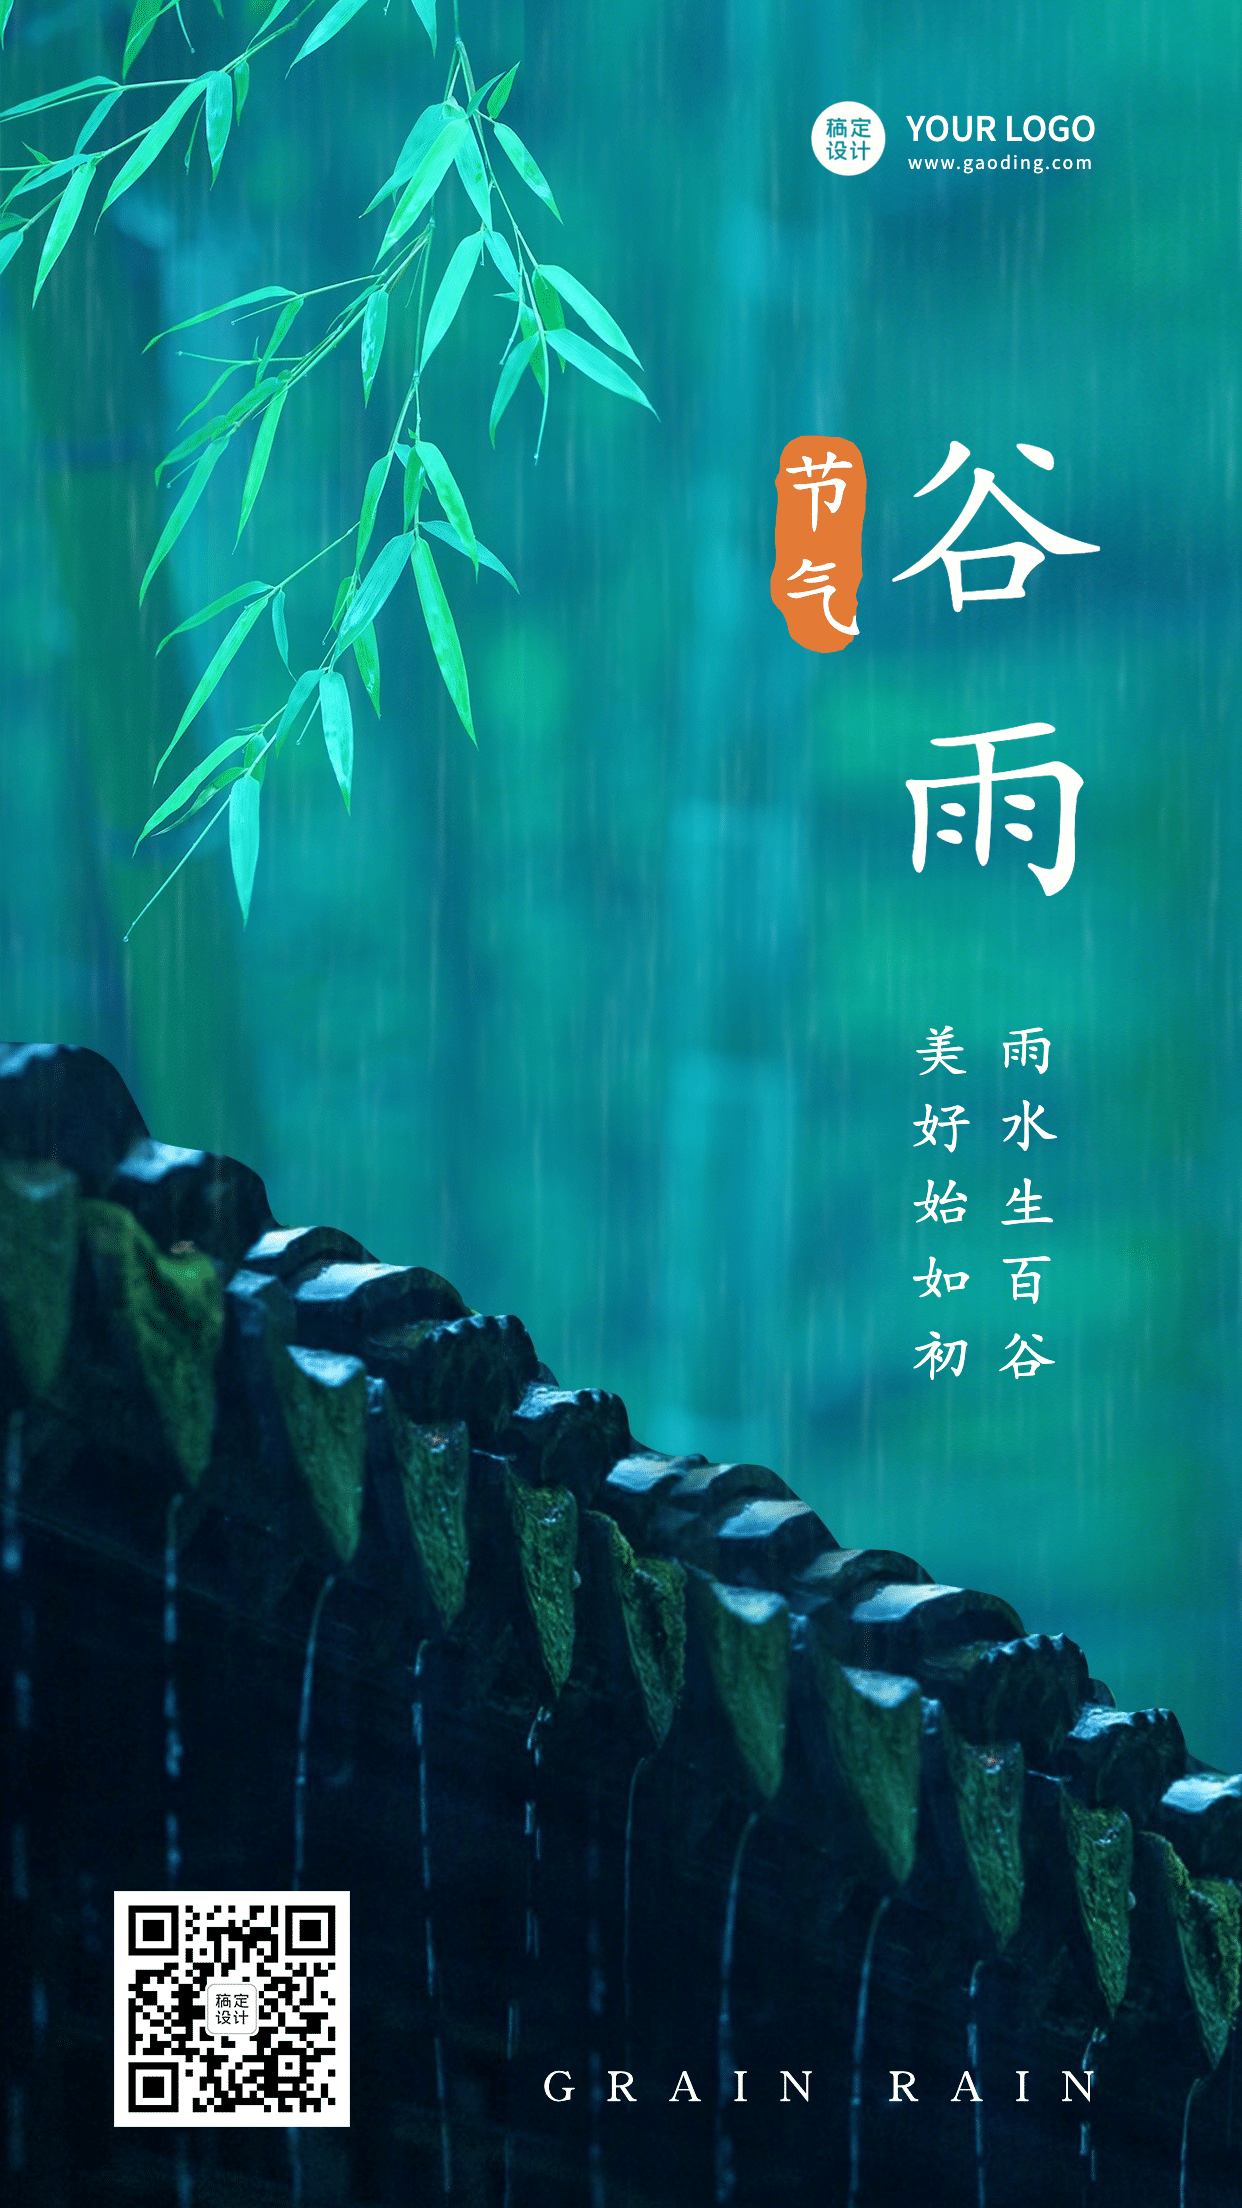 谷雨节气祝福下雨春天实景手机海报